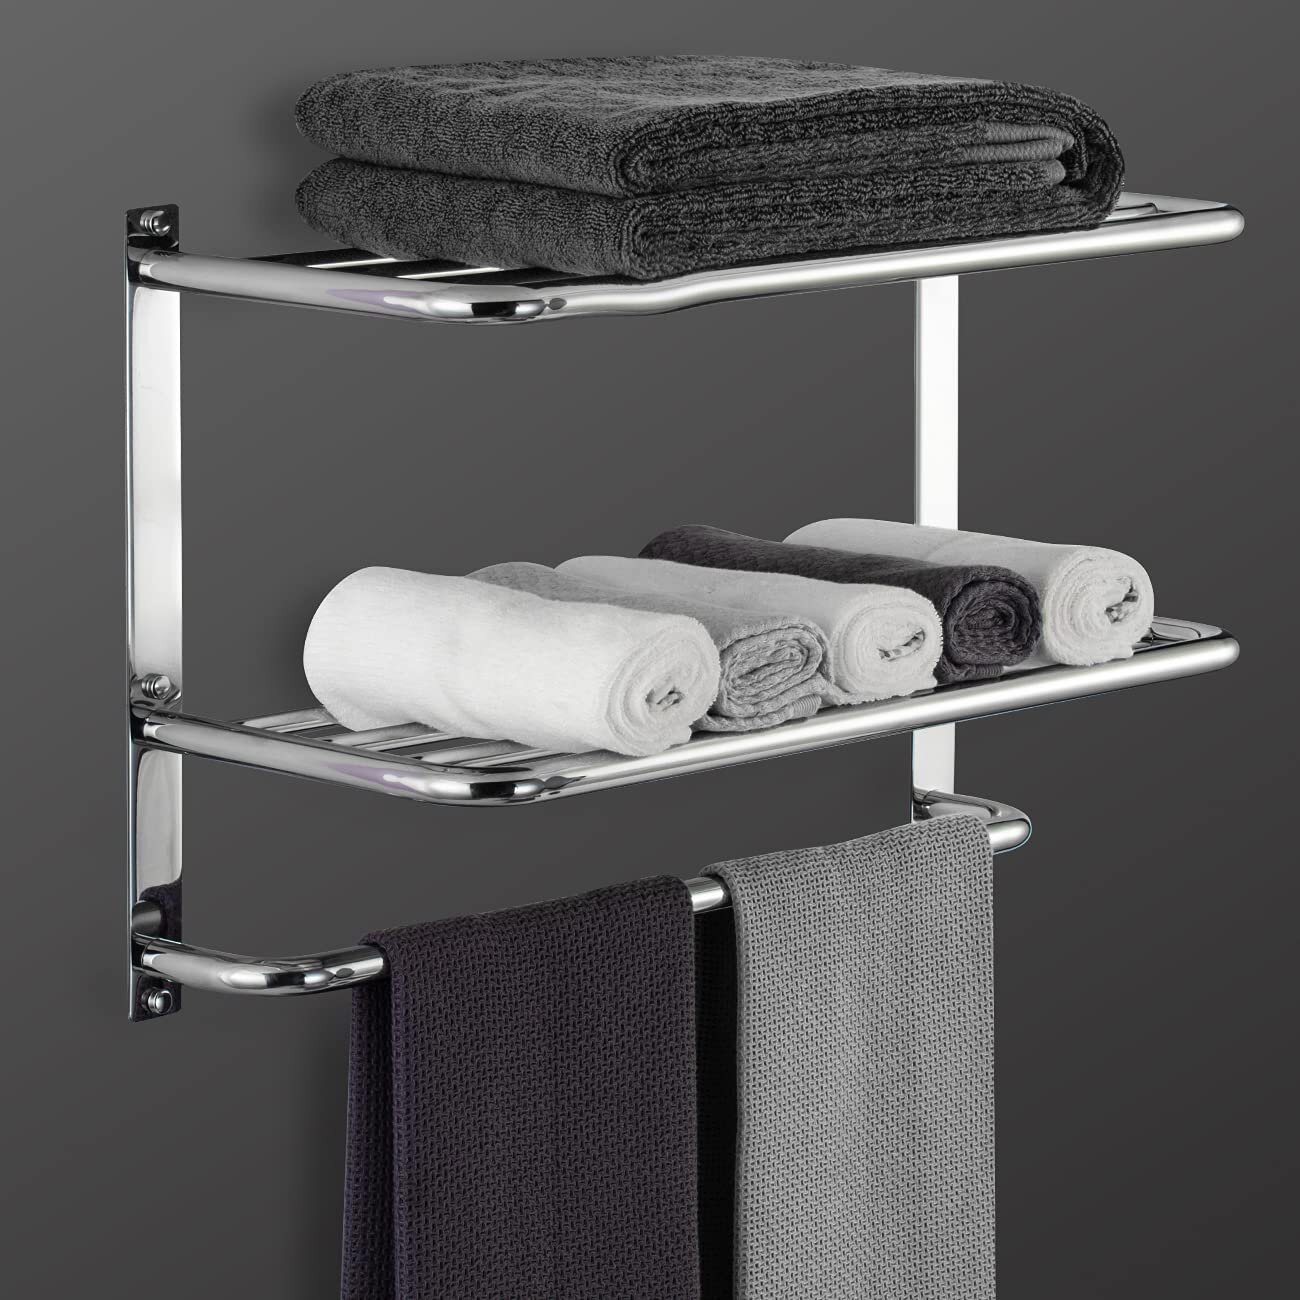 Bathroom Stainless Steel 304 Black Towel Ring Wall Mounted Towel Storage Holder 